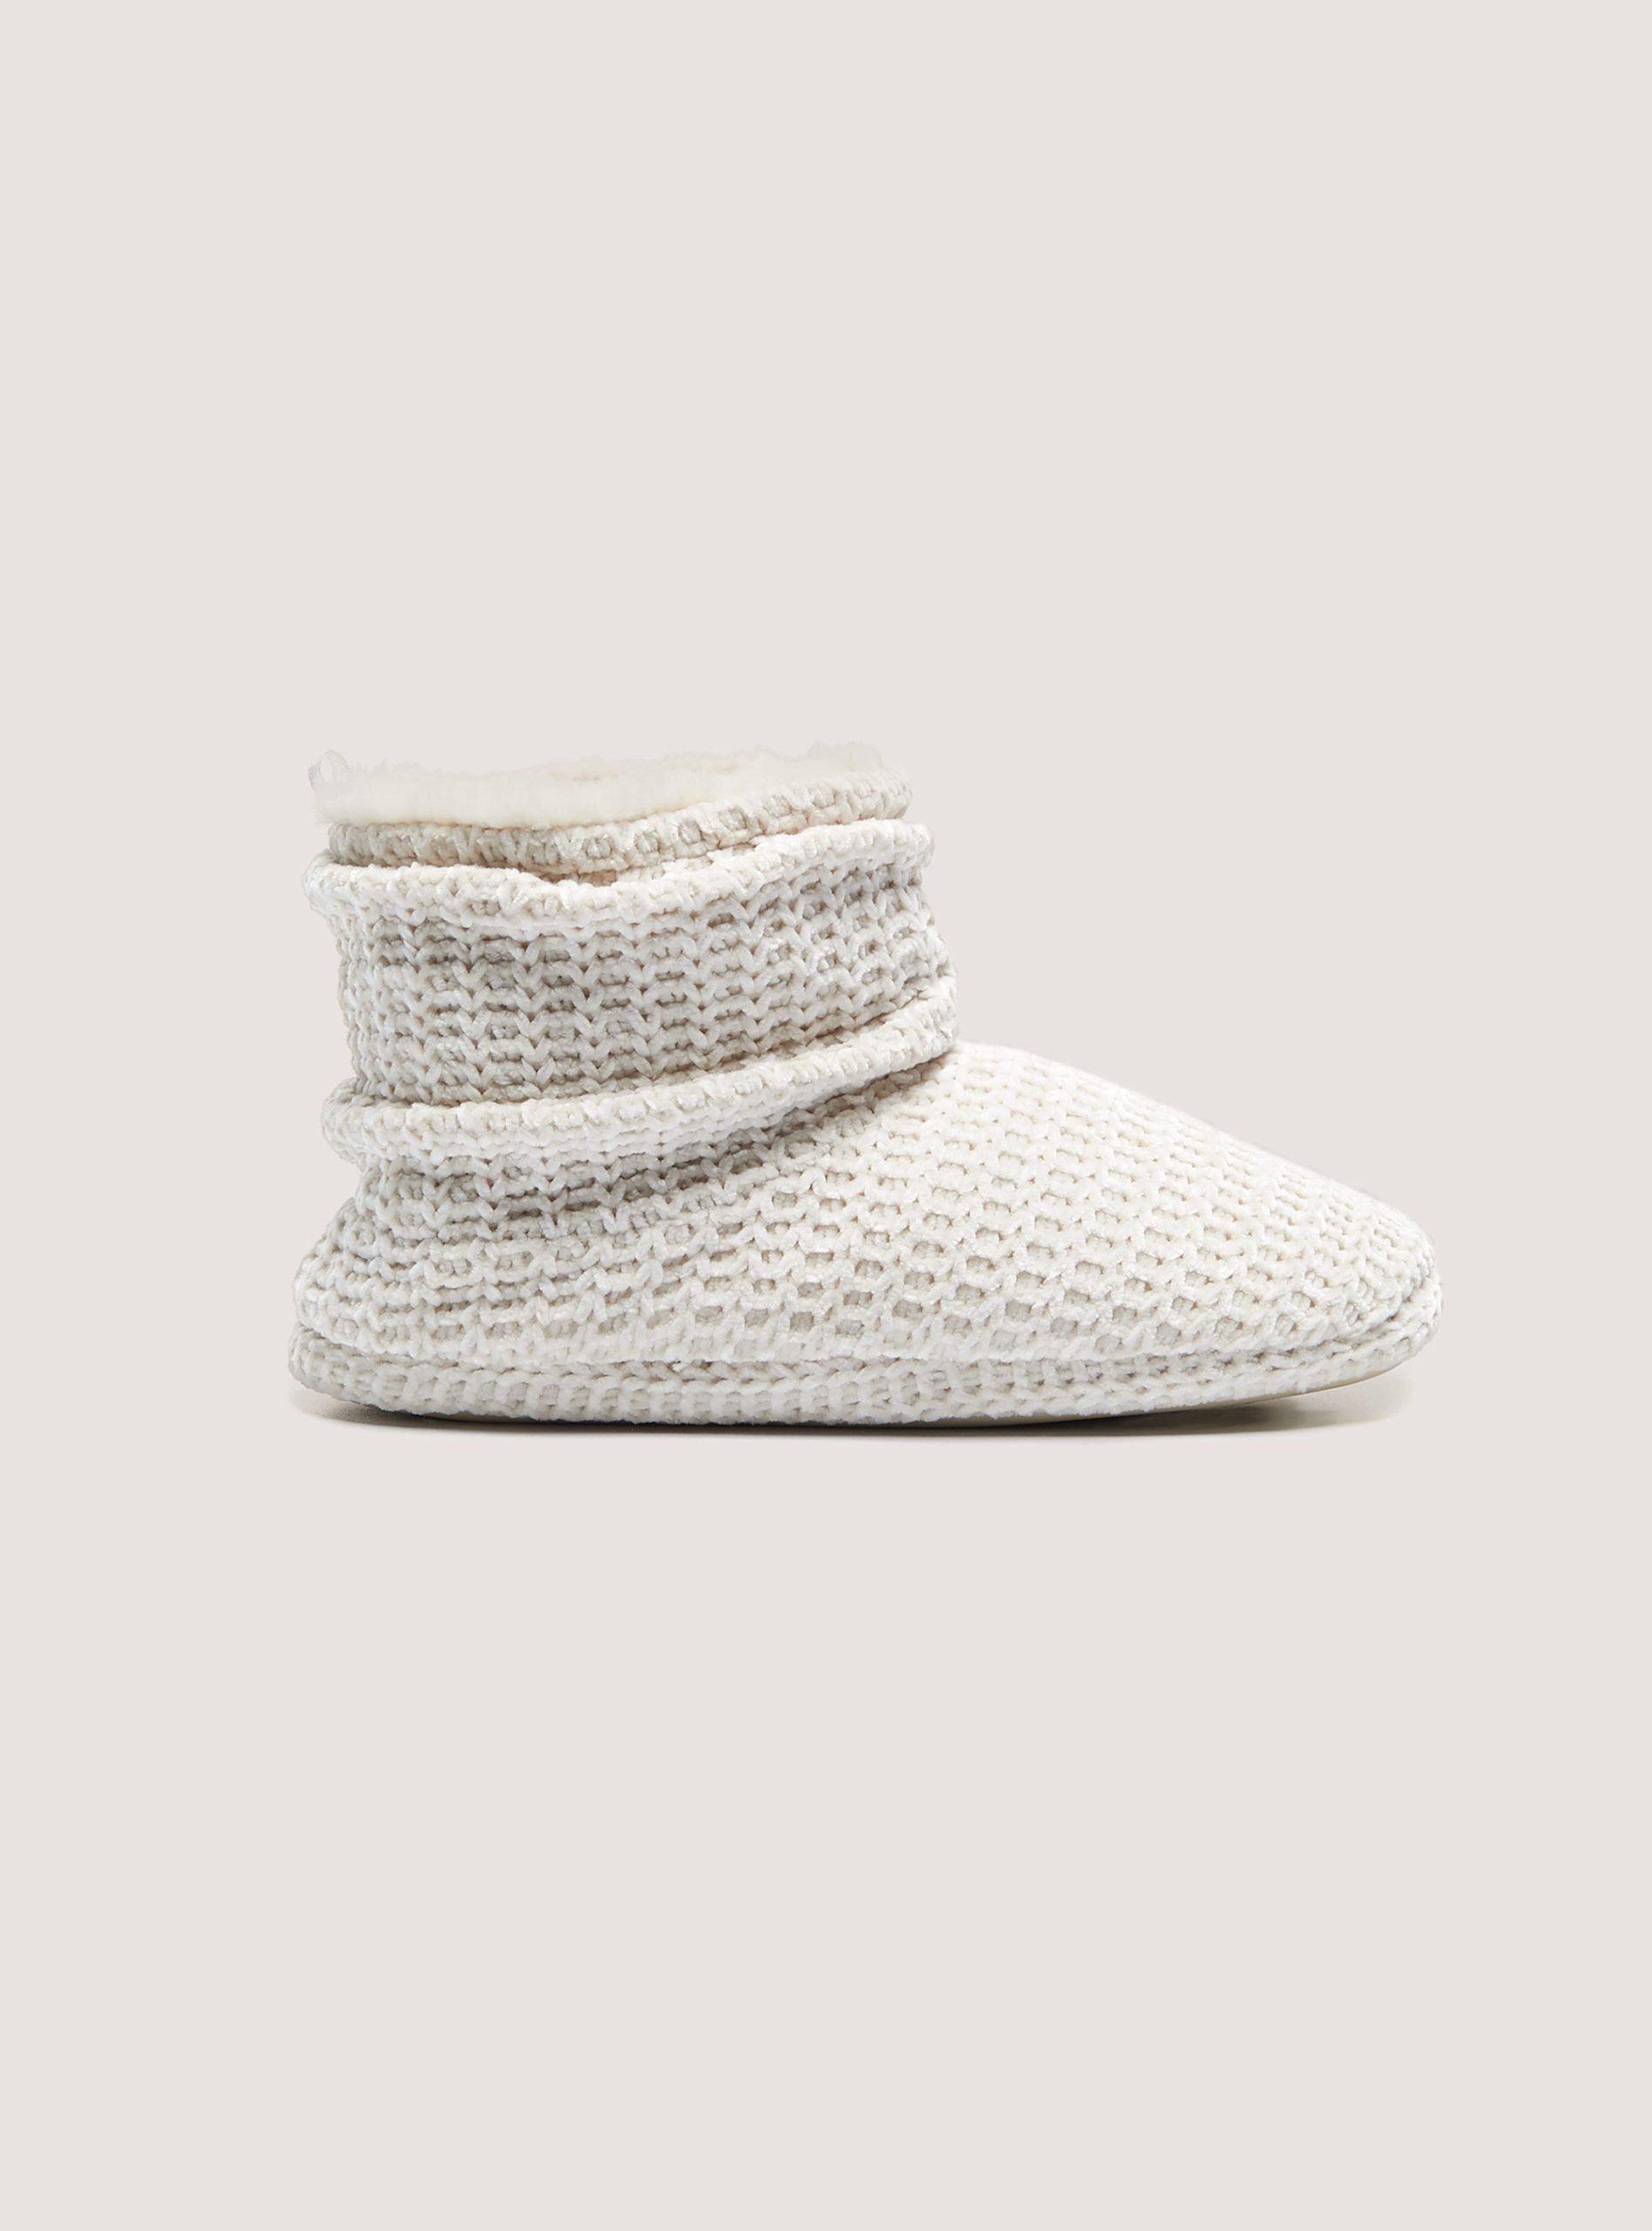 Tiefstpreis Schuhe Soft-Touch Ankle Slippers C099 White Alcott Frauen – 2